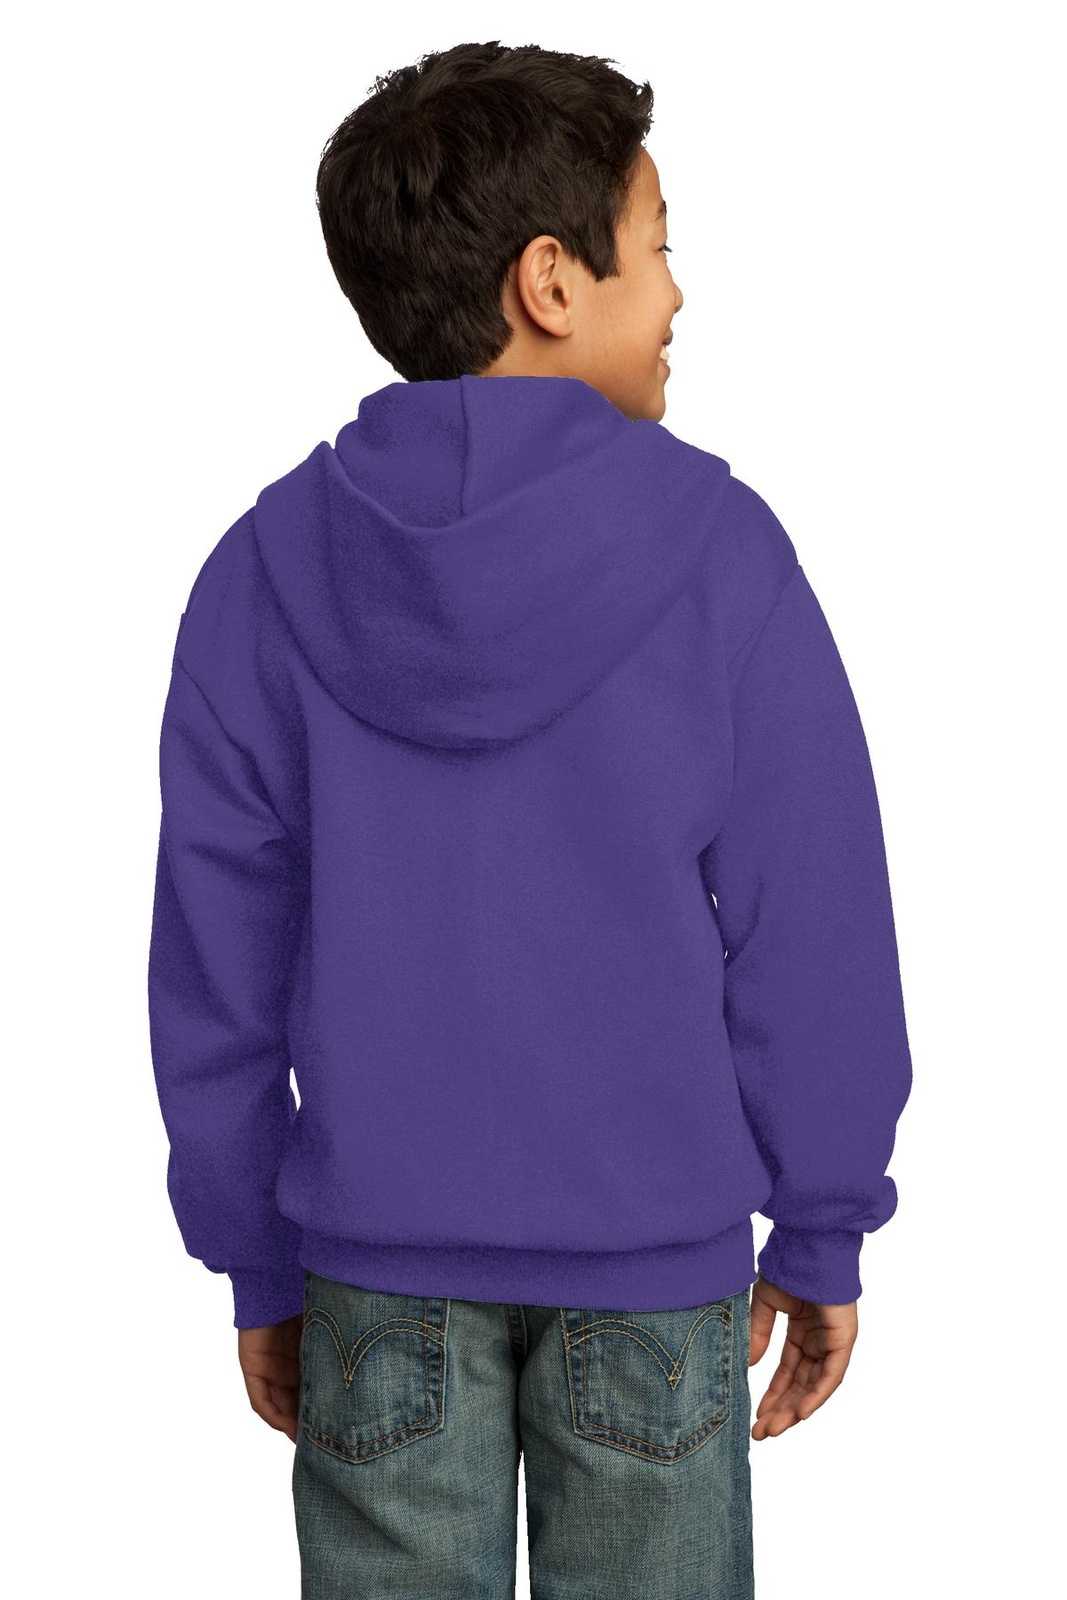 Port & Company PC90YZH Youth Core Fleece Full-Zip Hooded Sweatshirt - Purple - HIT a Double - 1